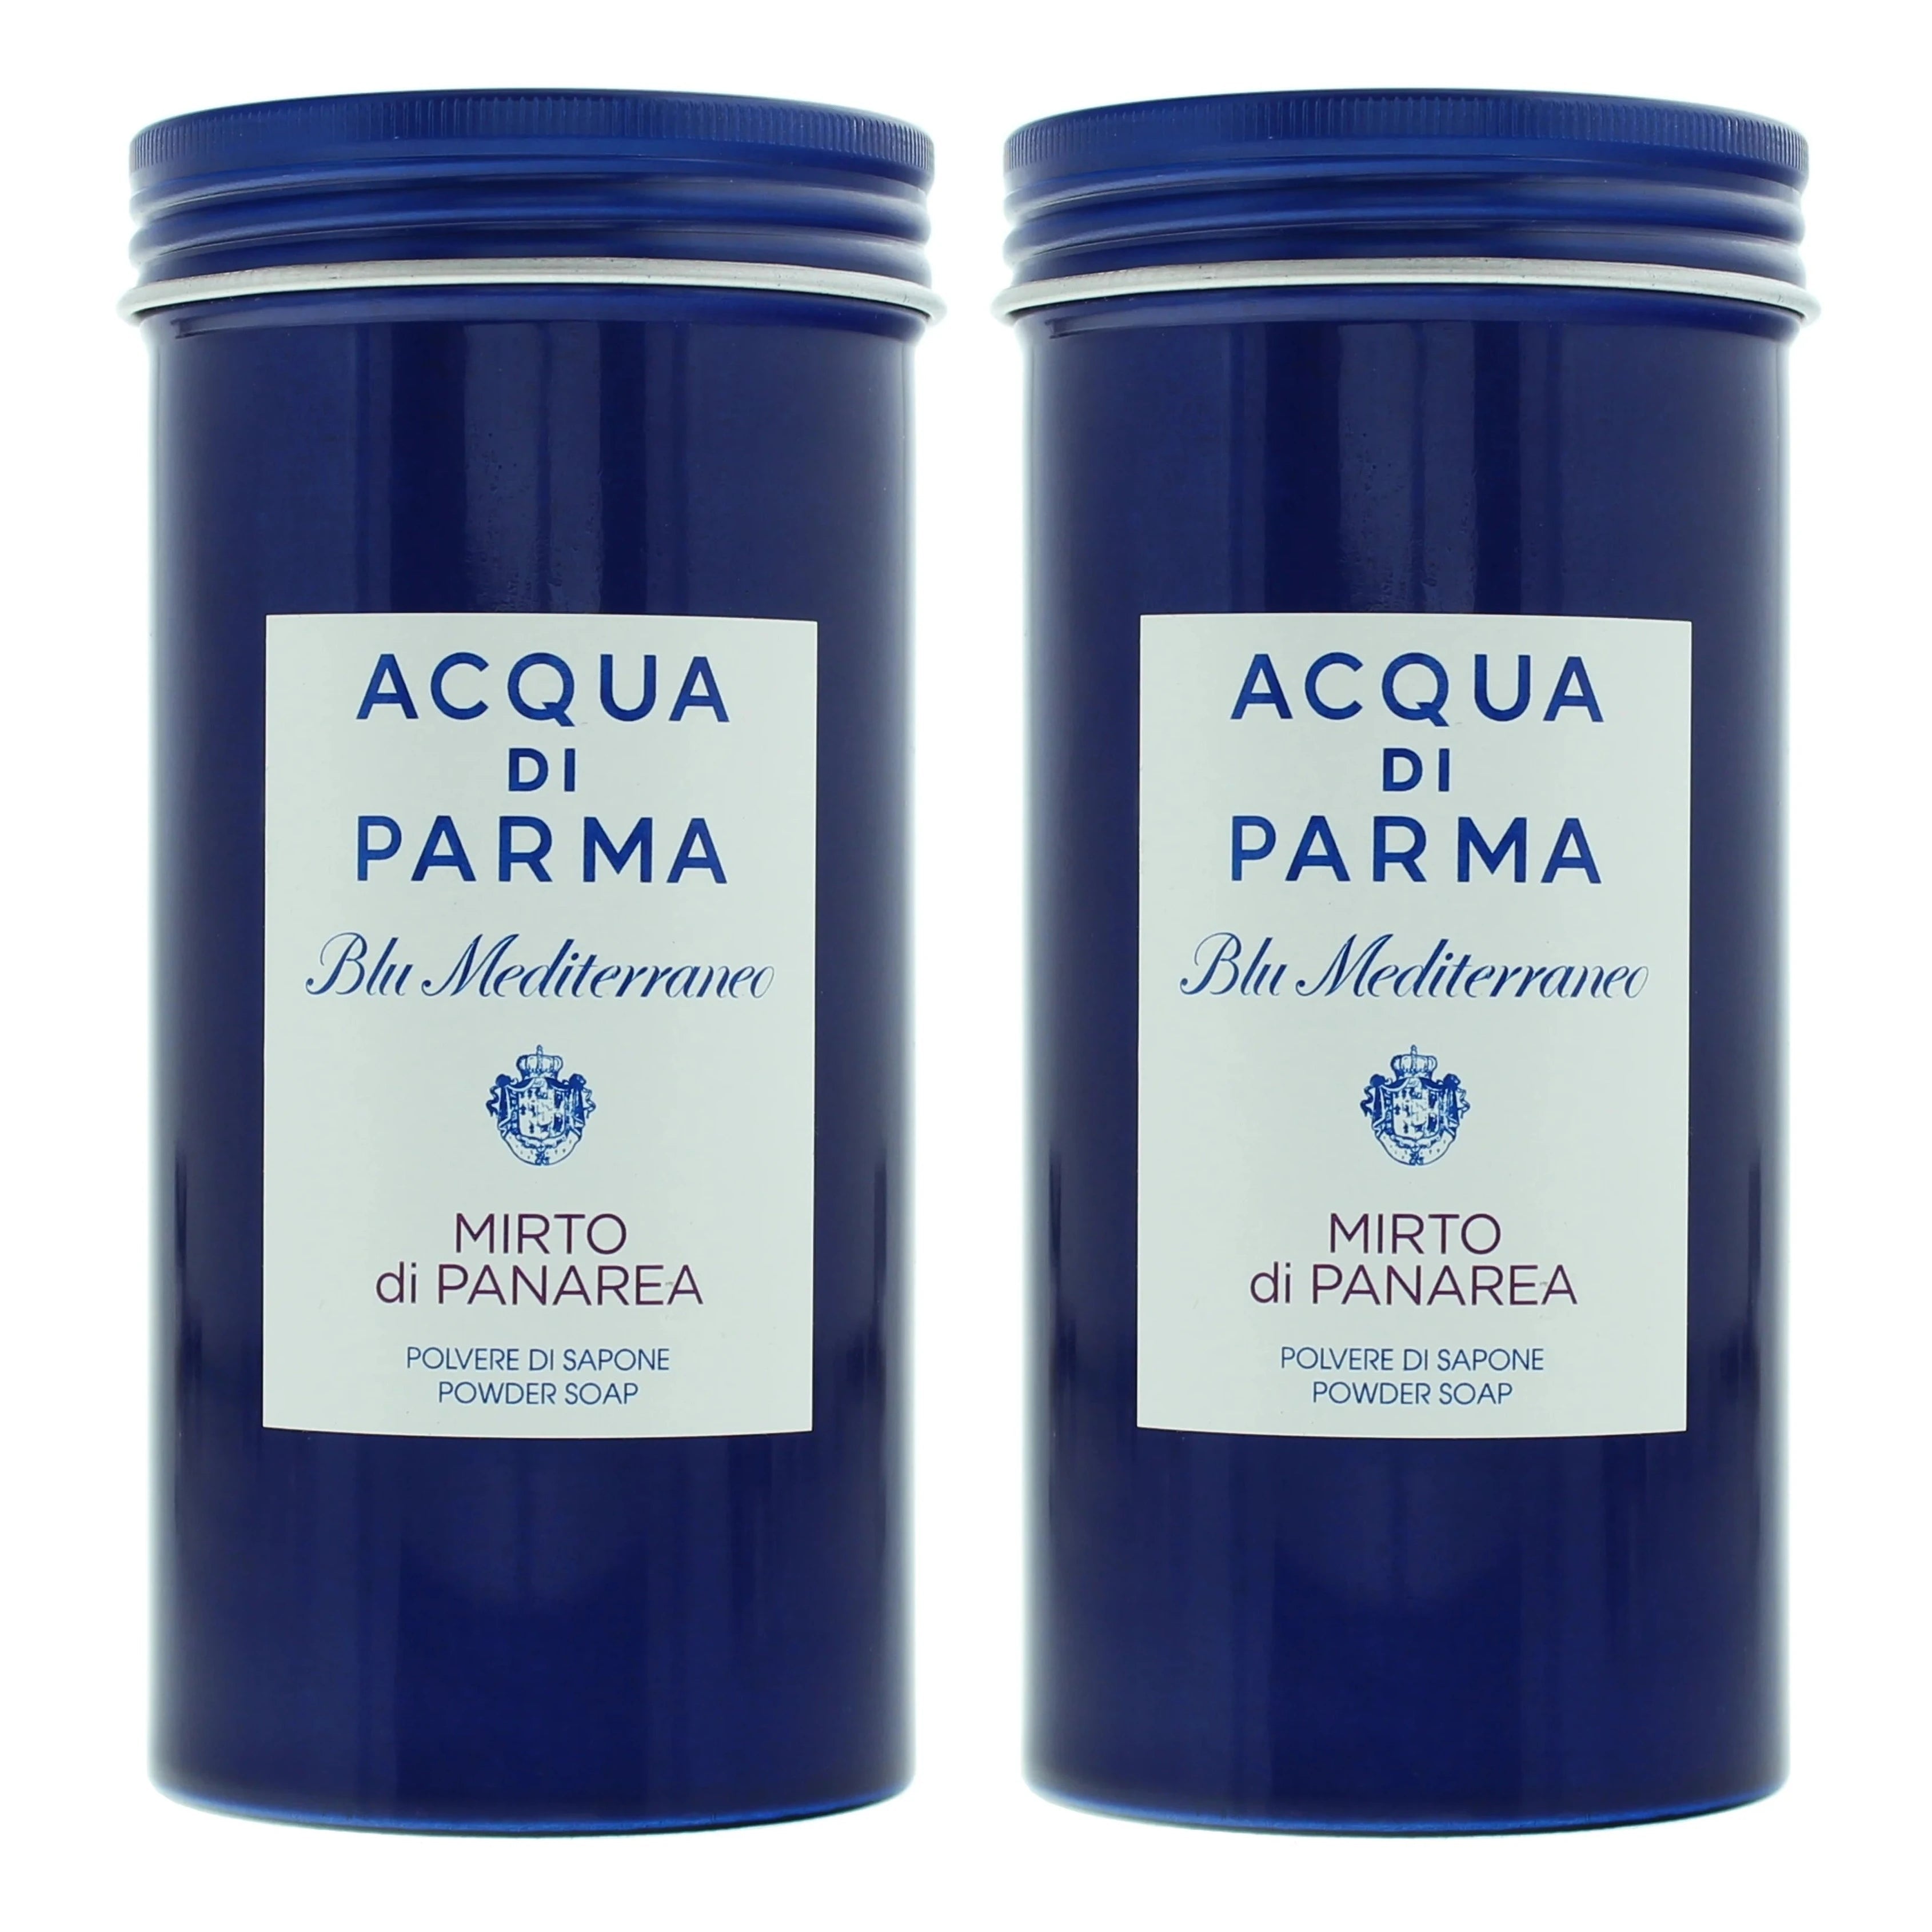 Acqua Di Parma Blu Mediterraneo Mirto Di Panarea Powder Soap | My Perfume Shop Australia